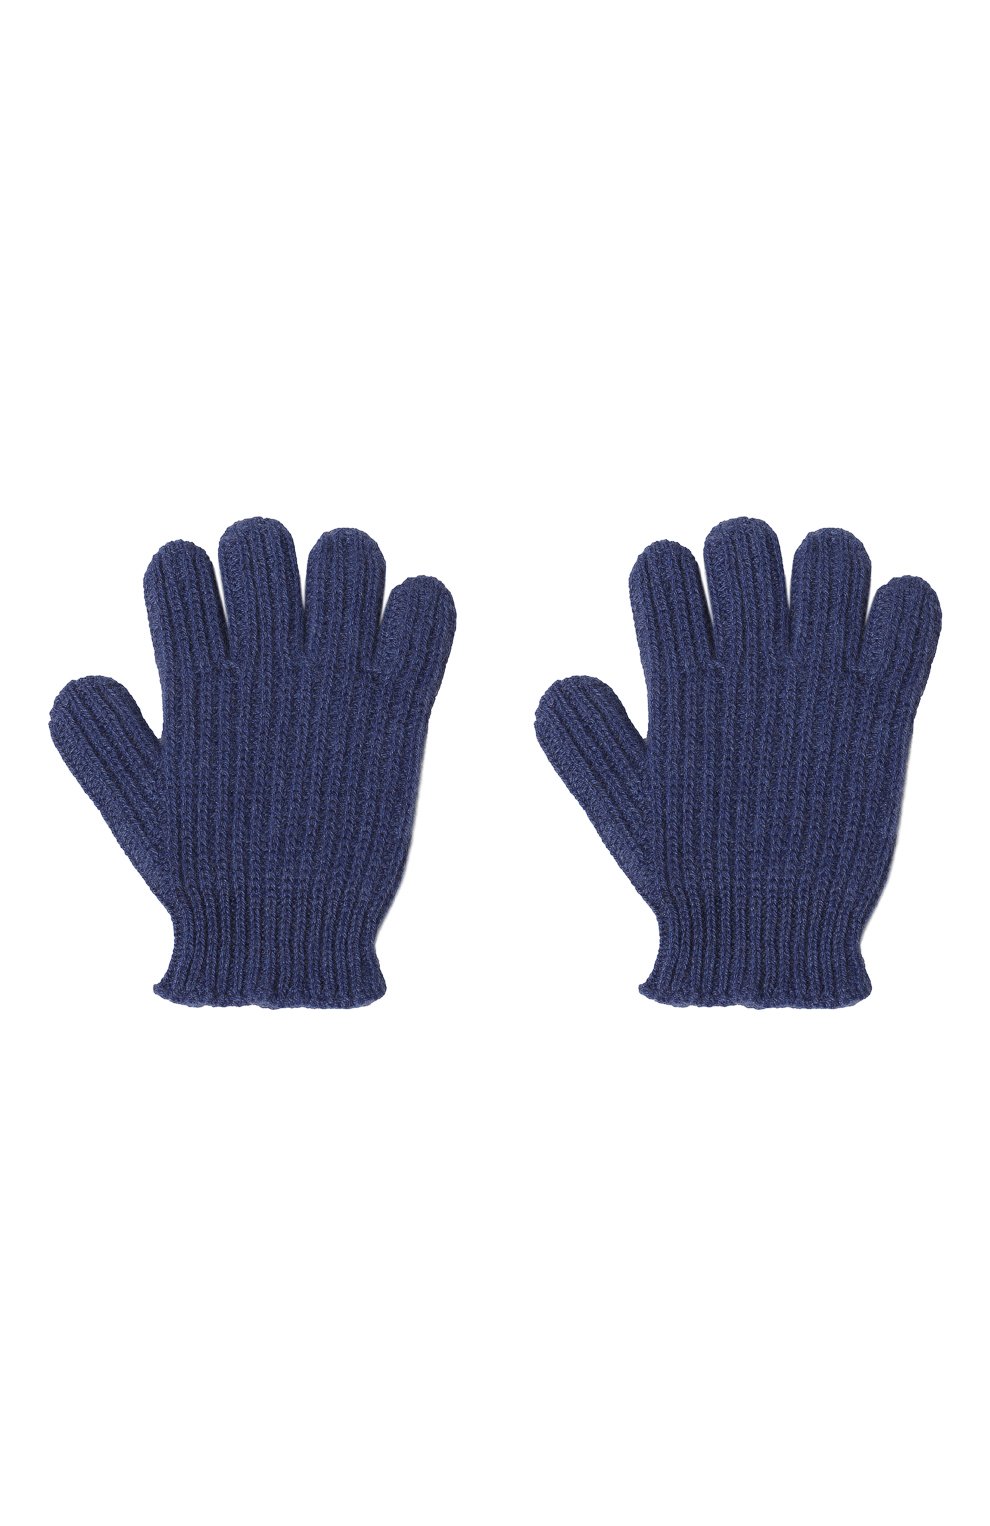 Детские кашемировые перчатки GIORGETTI CASHMERE темно-синего цвета, арт. MB1855 | Фото 2 (Материал: Текстиль, Кашемир, Шерсть)